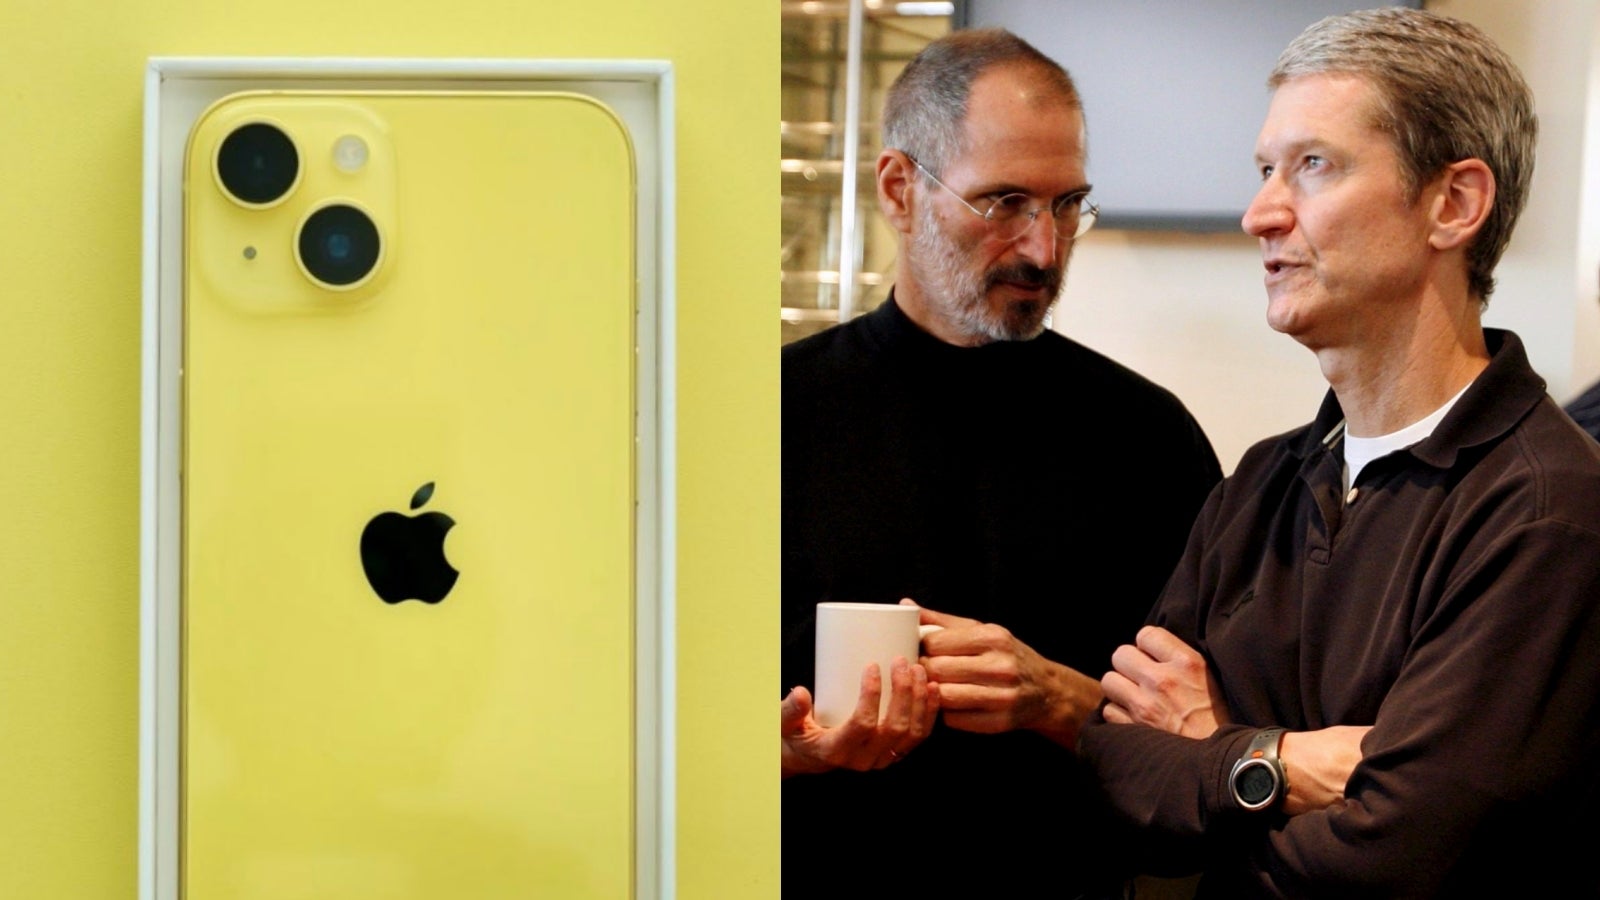 Steve Jobs vizyon sahibi biriydi ancak Tim Cook, Apple'ı yeni (ekonomik) boyutlara taşıdı.  - 30 milyon kişi “şimdiye kadarki en kötü iPhone”u satın aldı: Apple'ın telefon pazarındaki kült benzeri etkisi